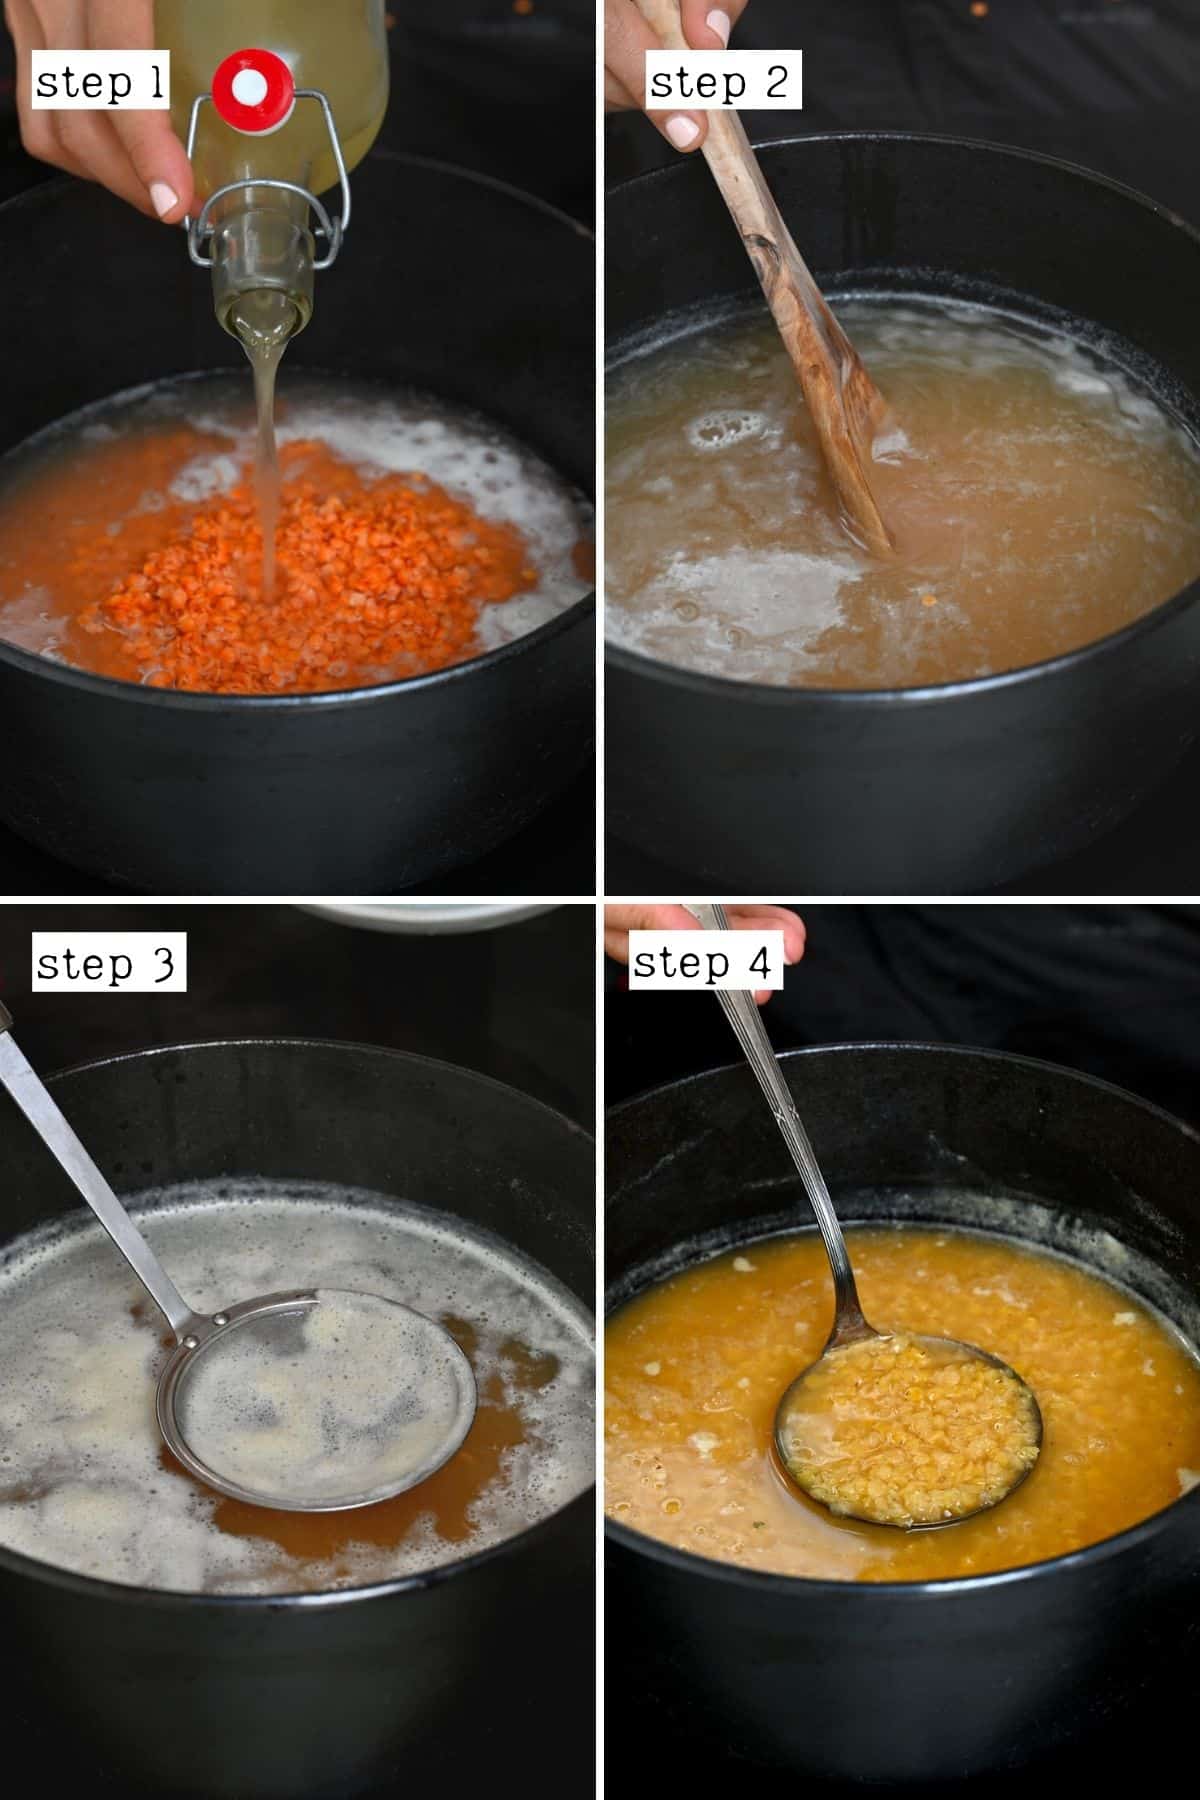 Steps for preparing red lentil soup